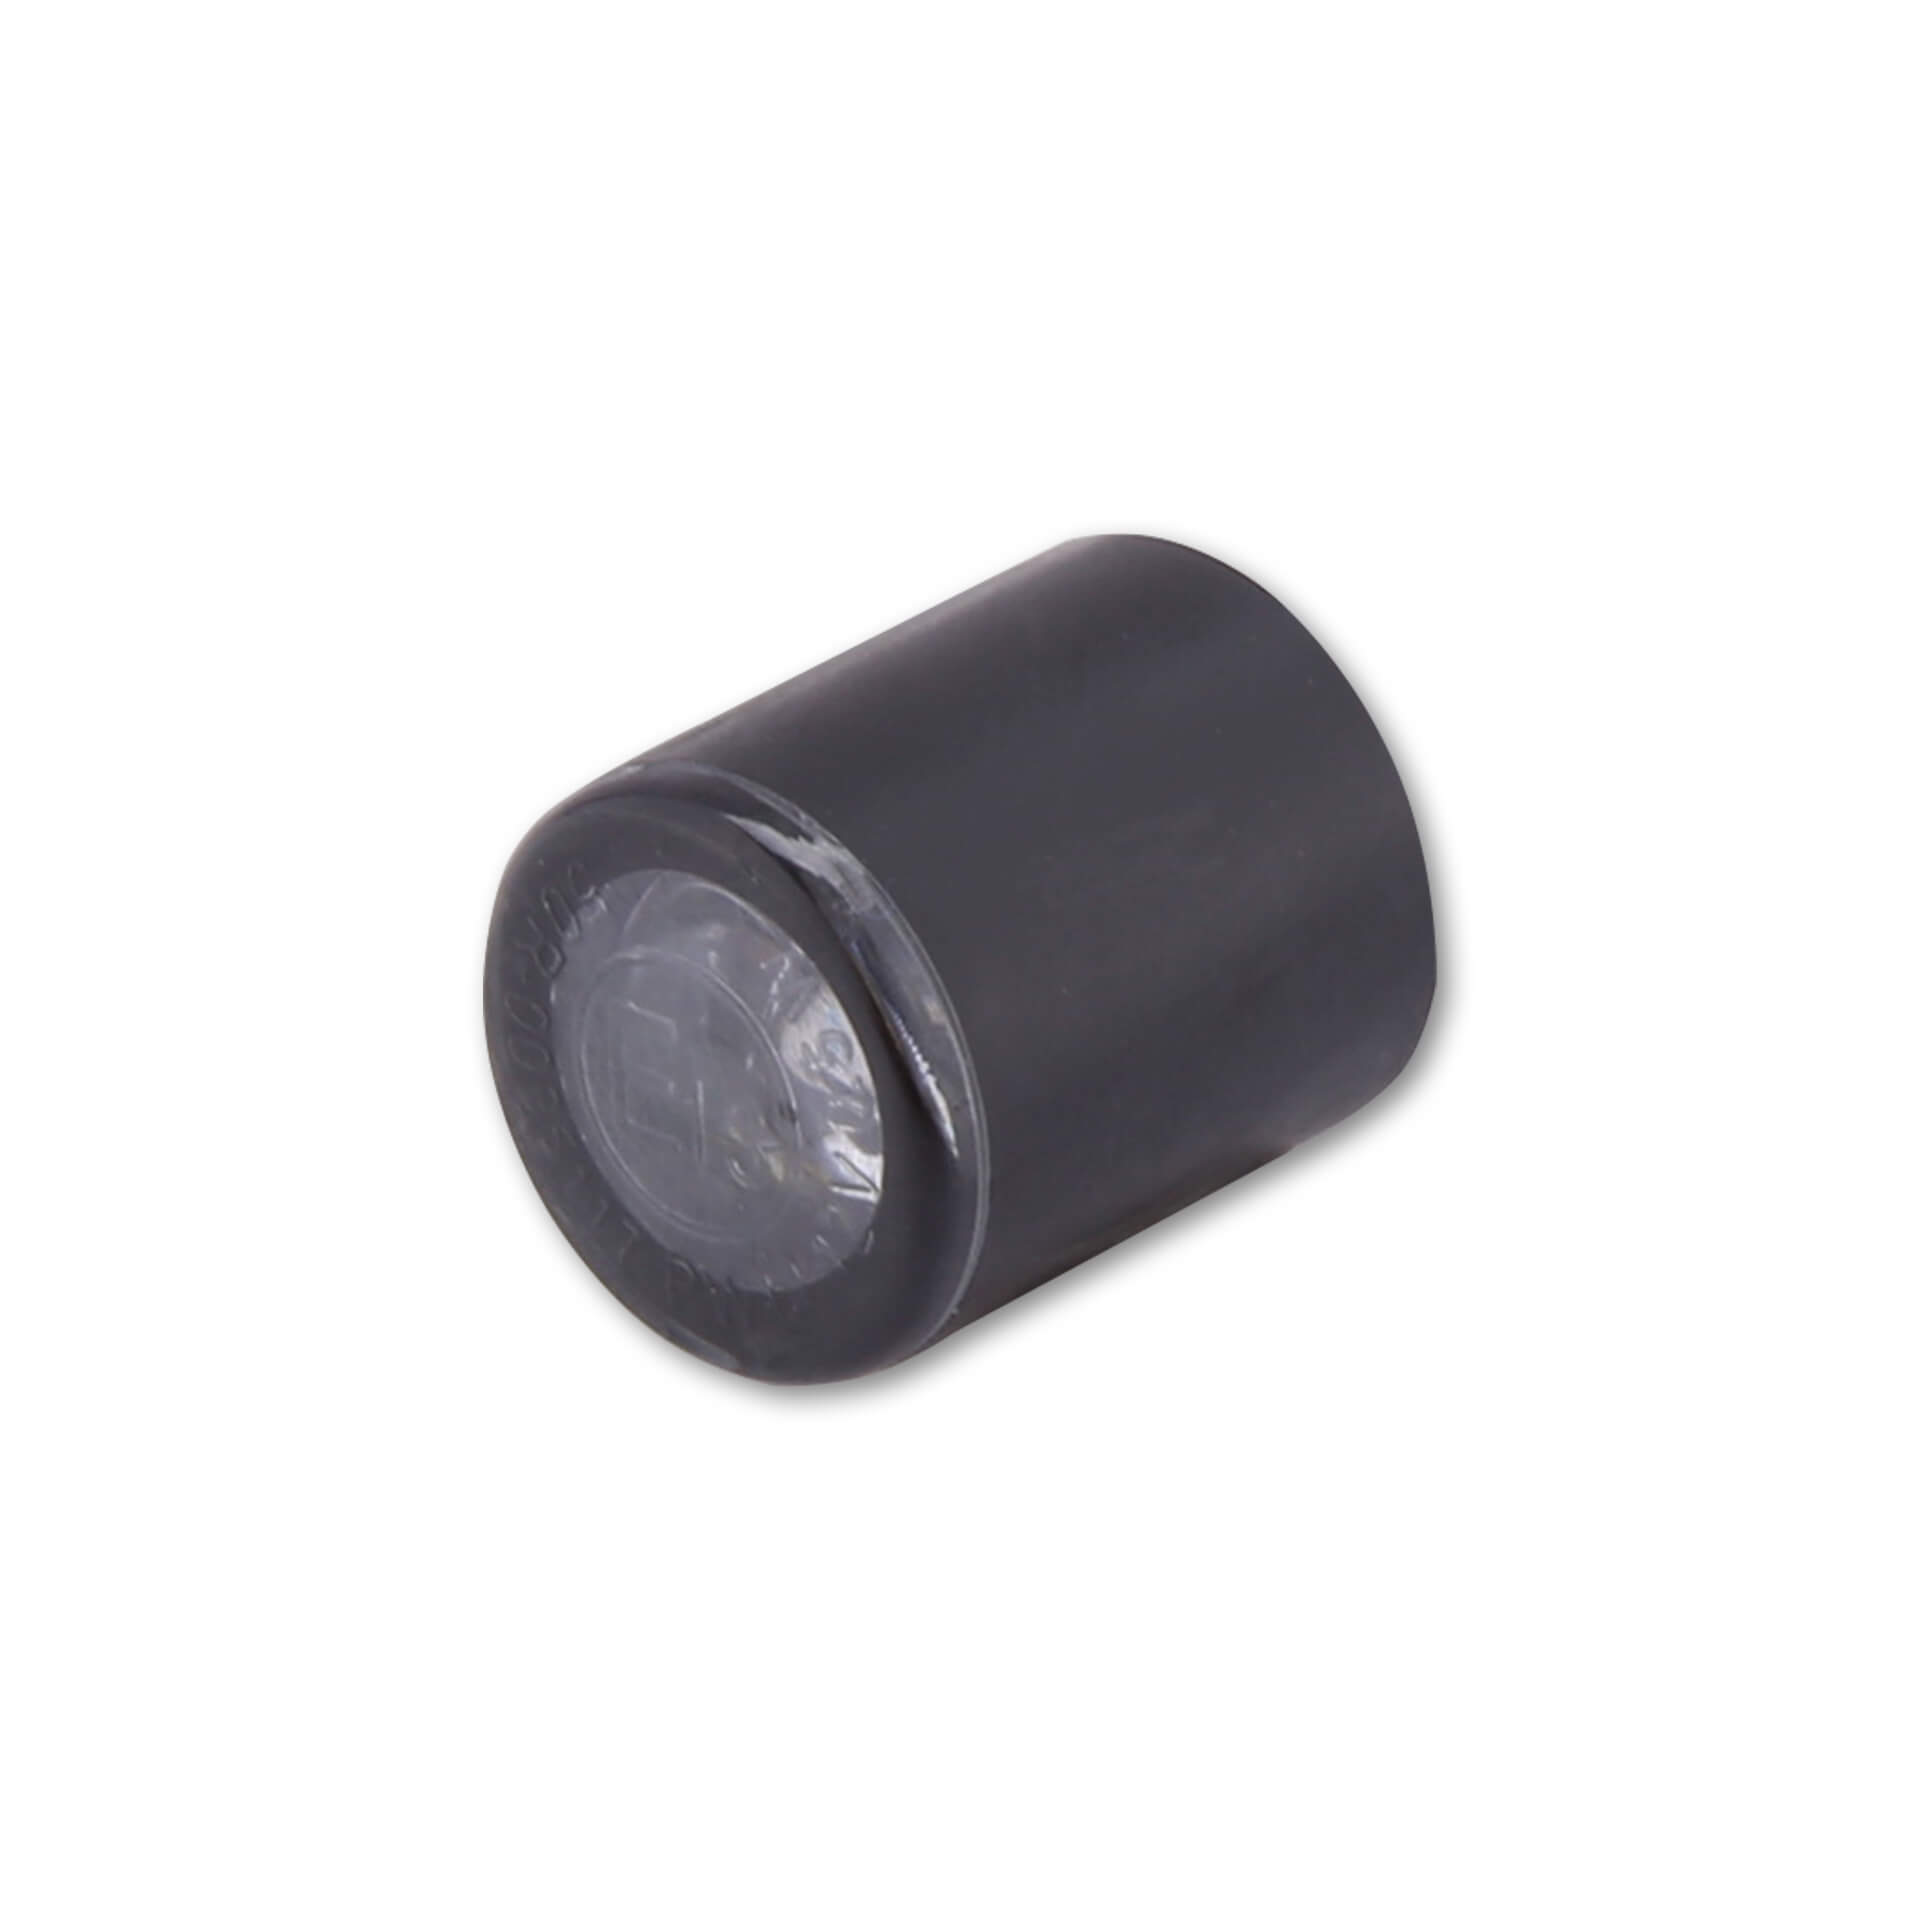 Image of Highsider PROTON module LED position light, nero